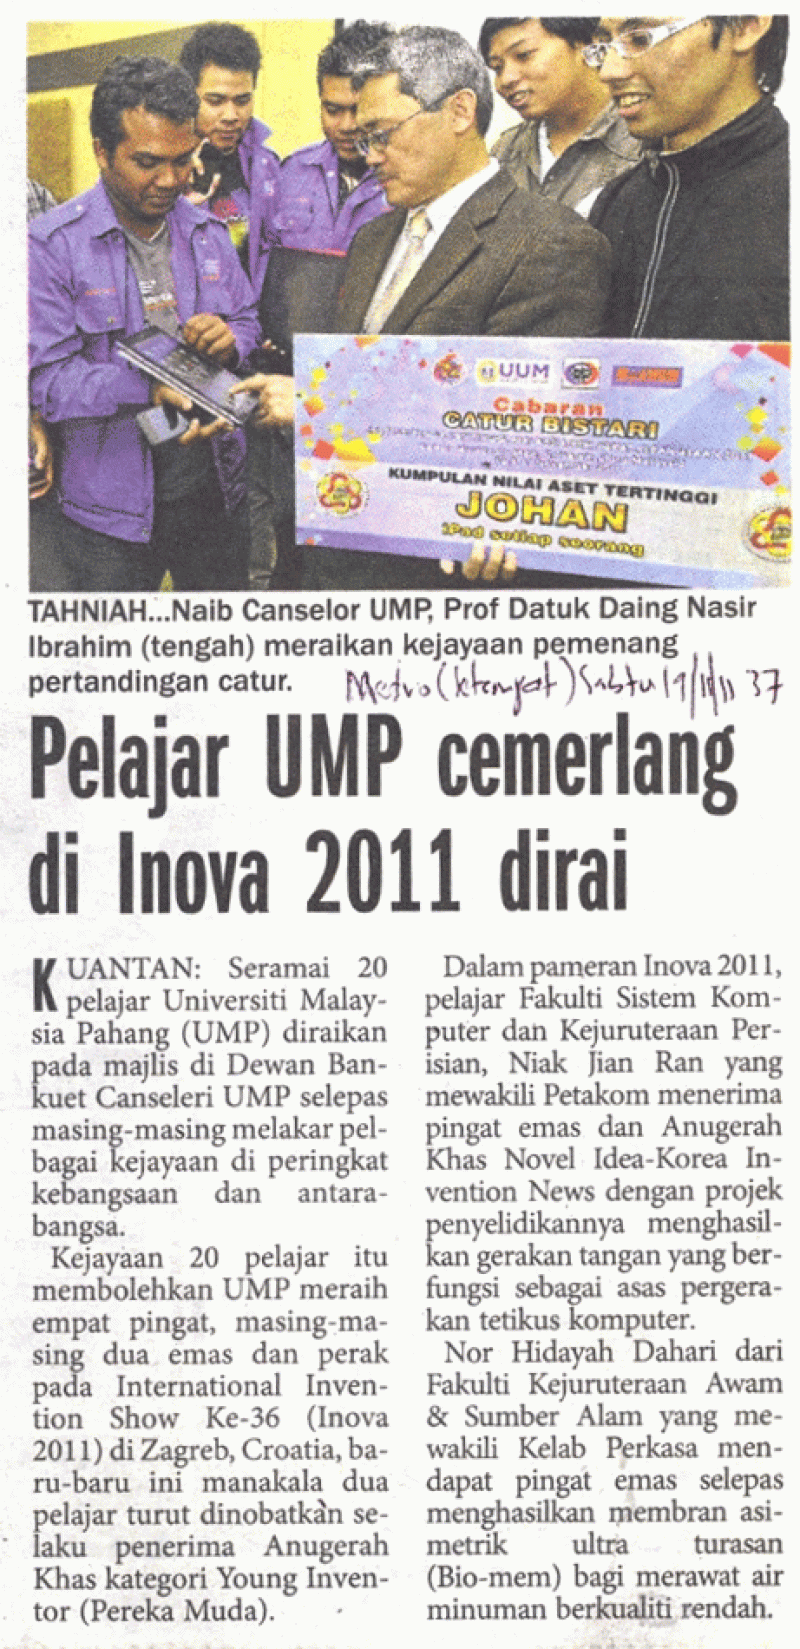 Pelajar UMP Cemerlang Di Inova 2011 Dirai